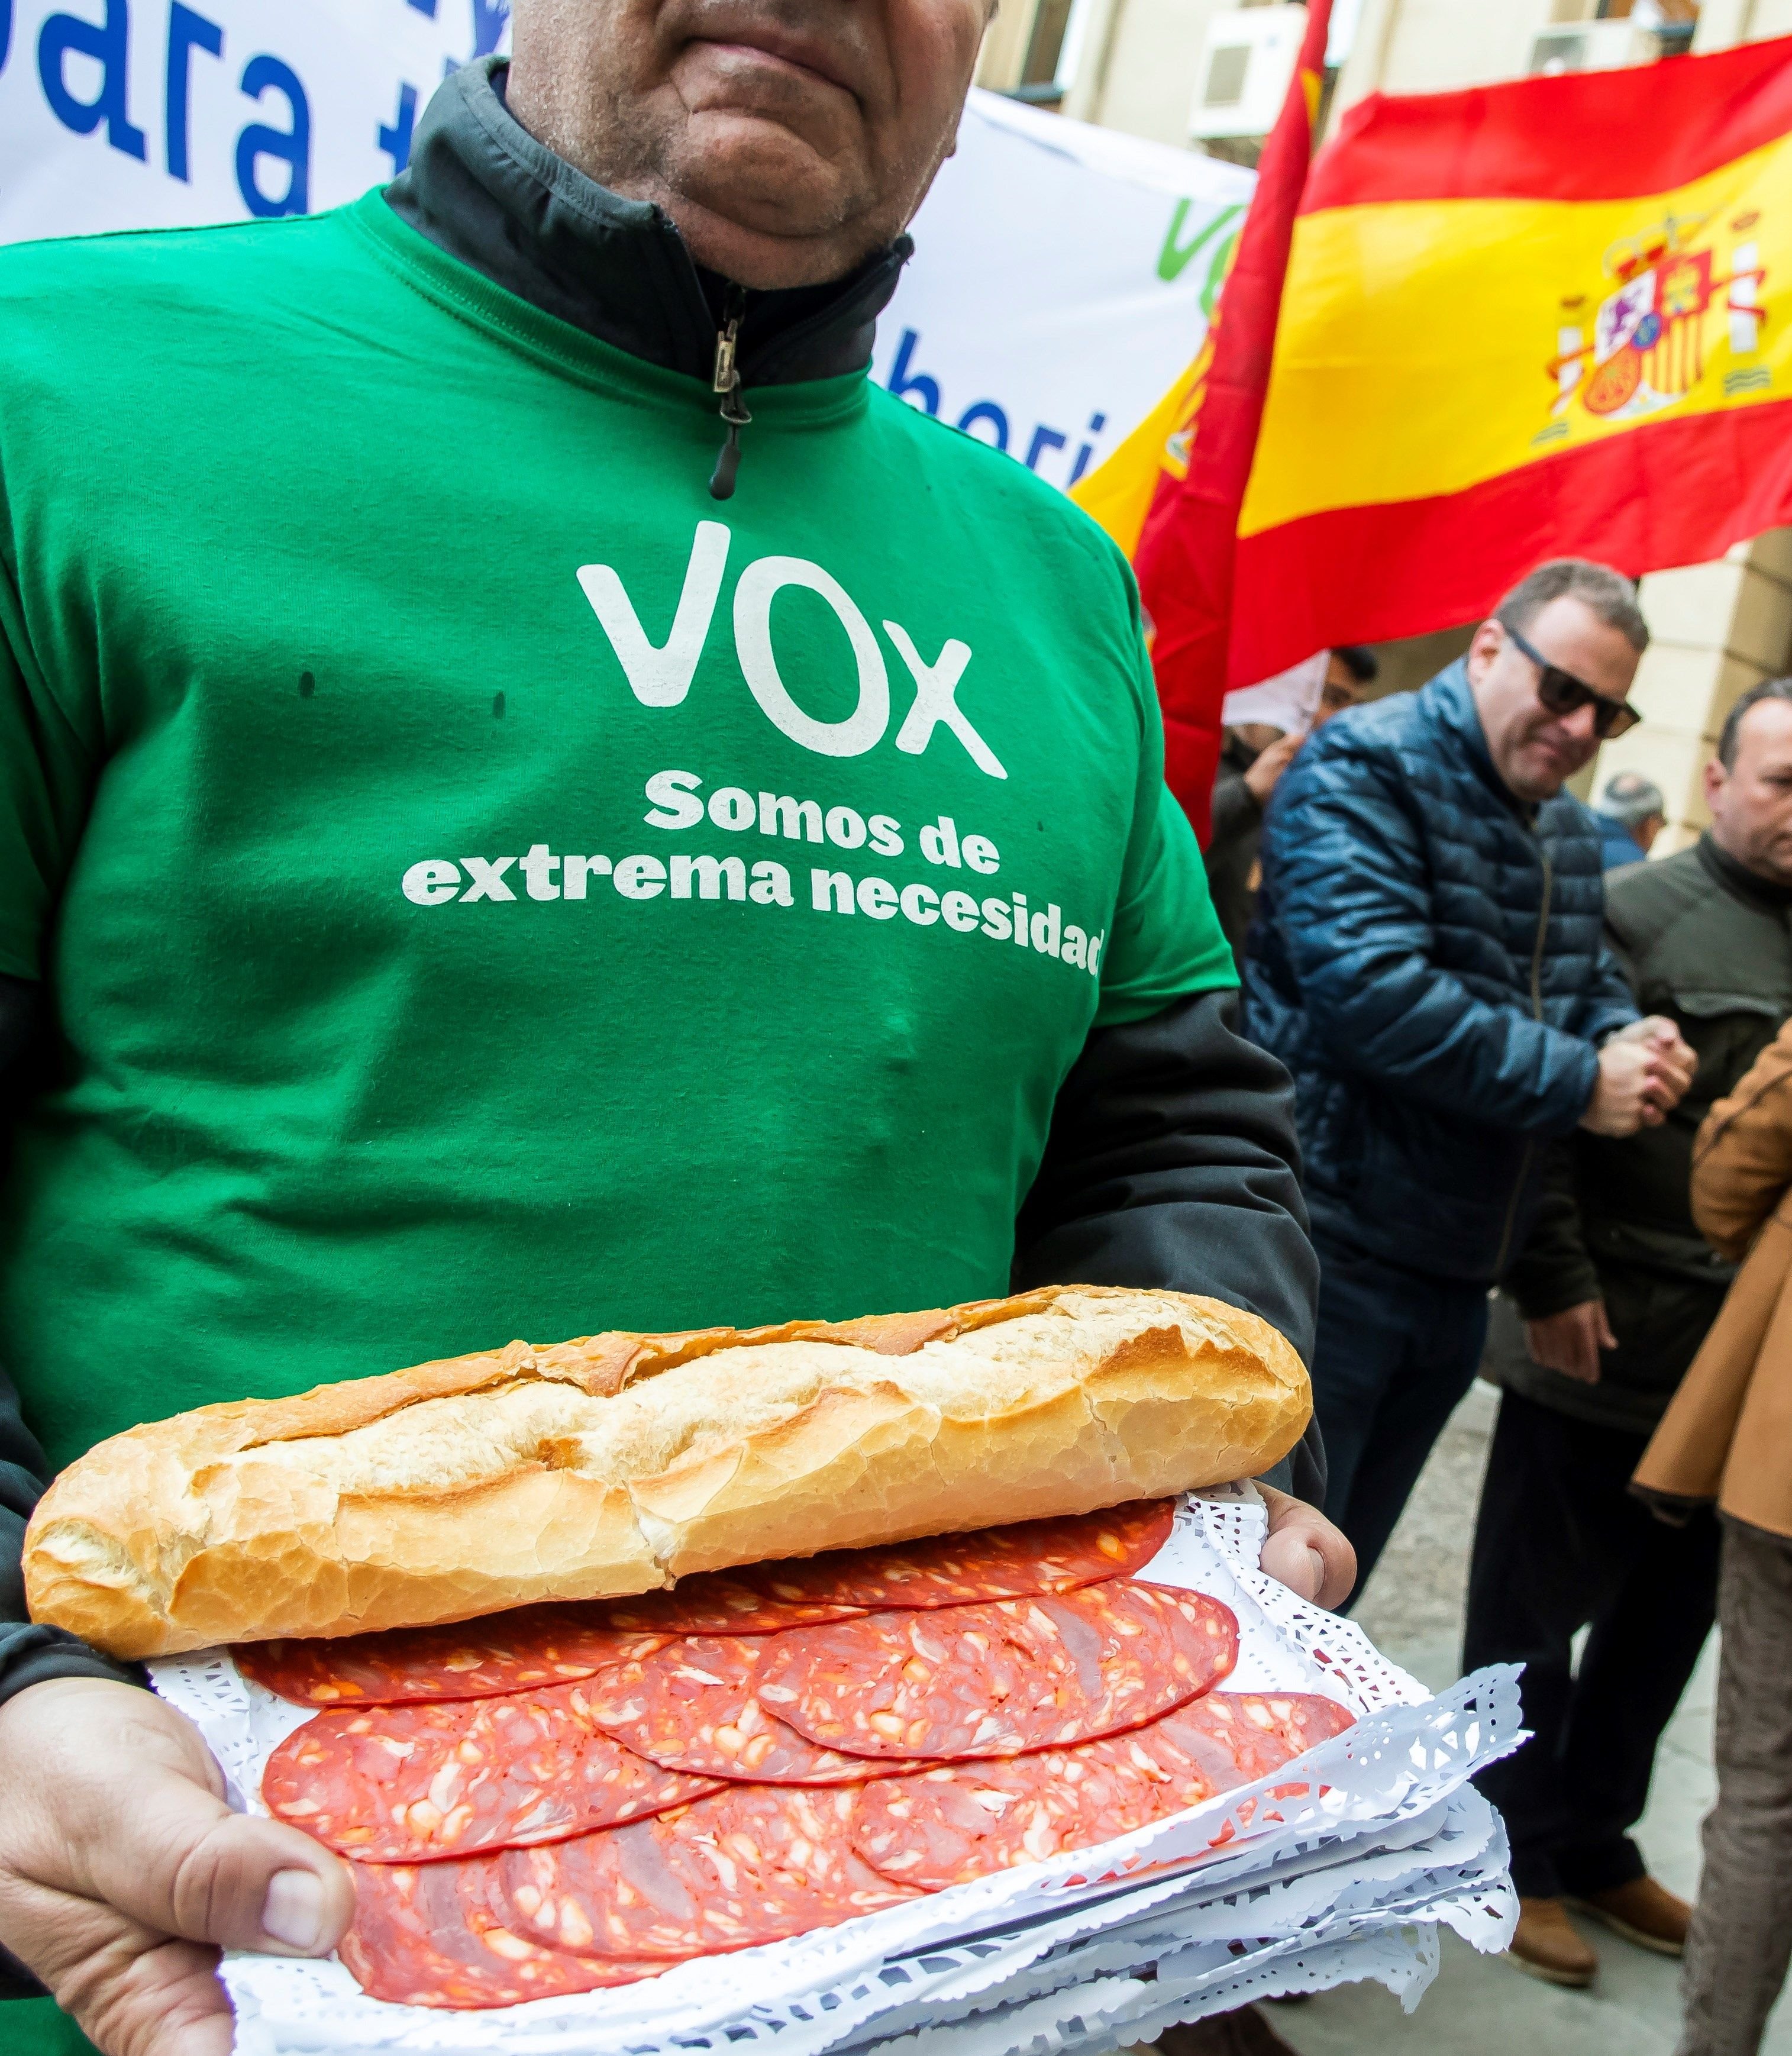 La prensa española normaliza a Vox; la catalana les llama "ultras"